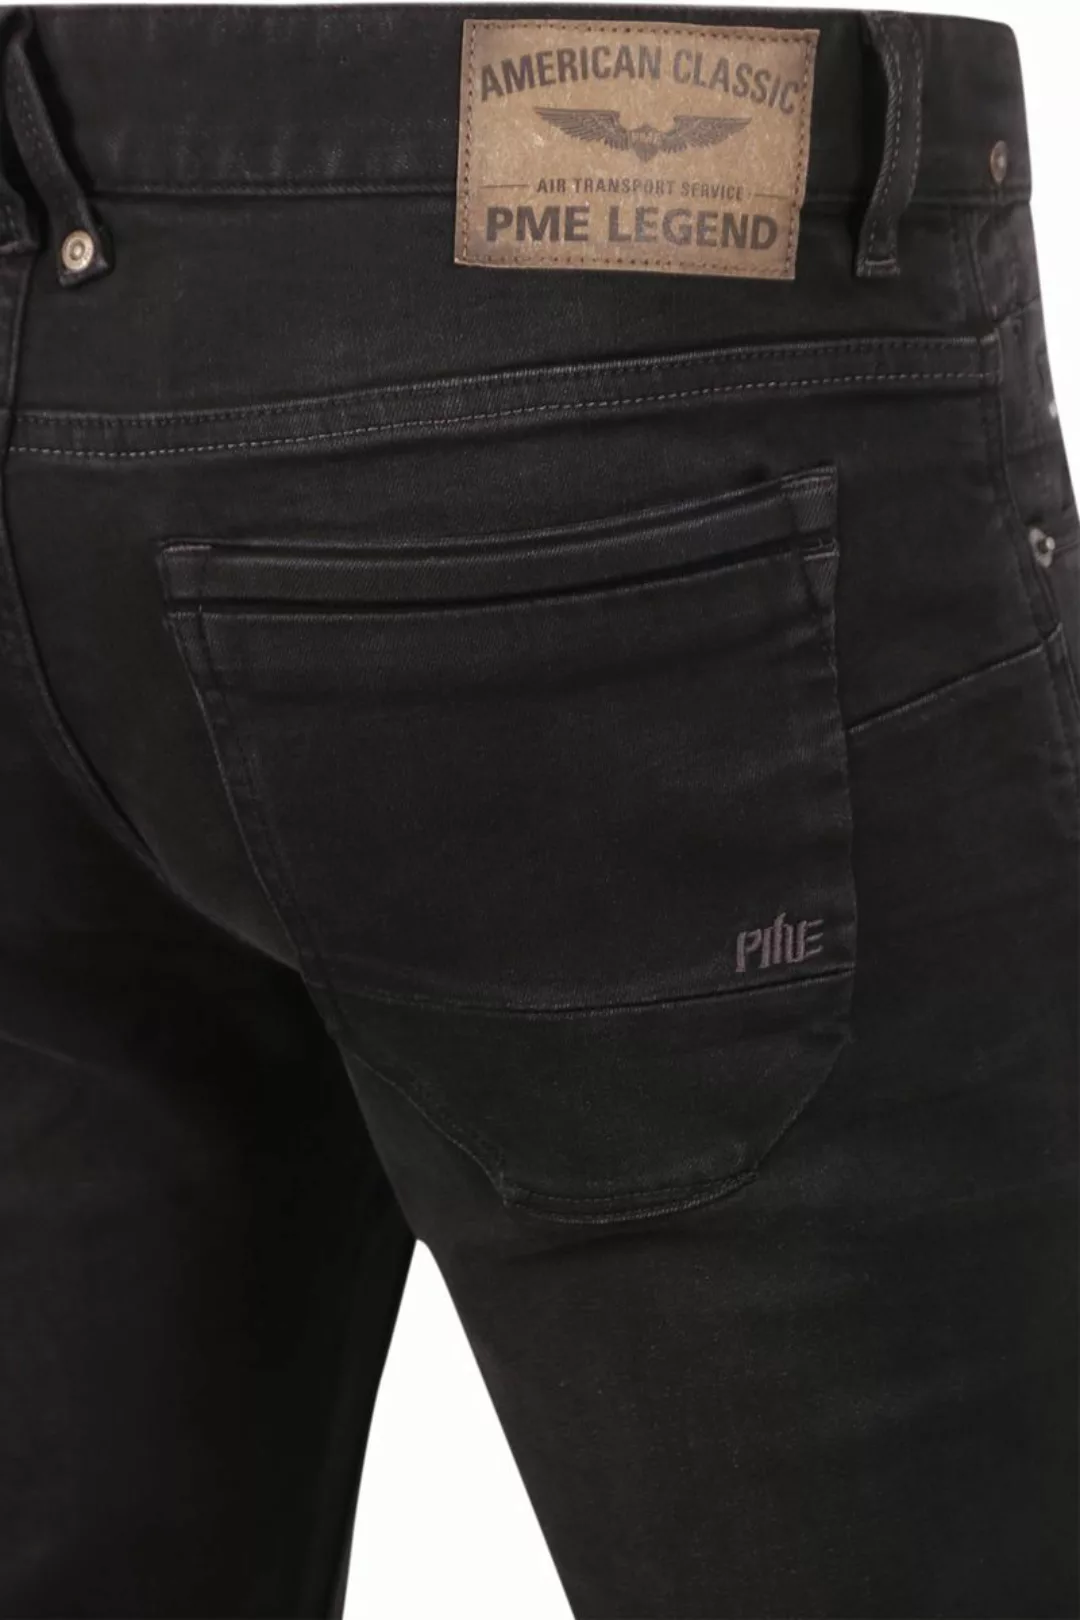 PME Legend Nightflight Jeans Schwarz RBD - Größe W 38 - L 30 günstig online kaufen